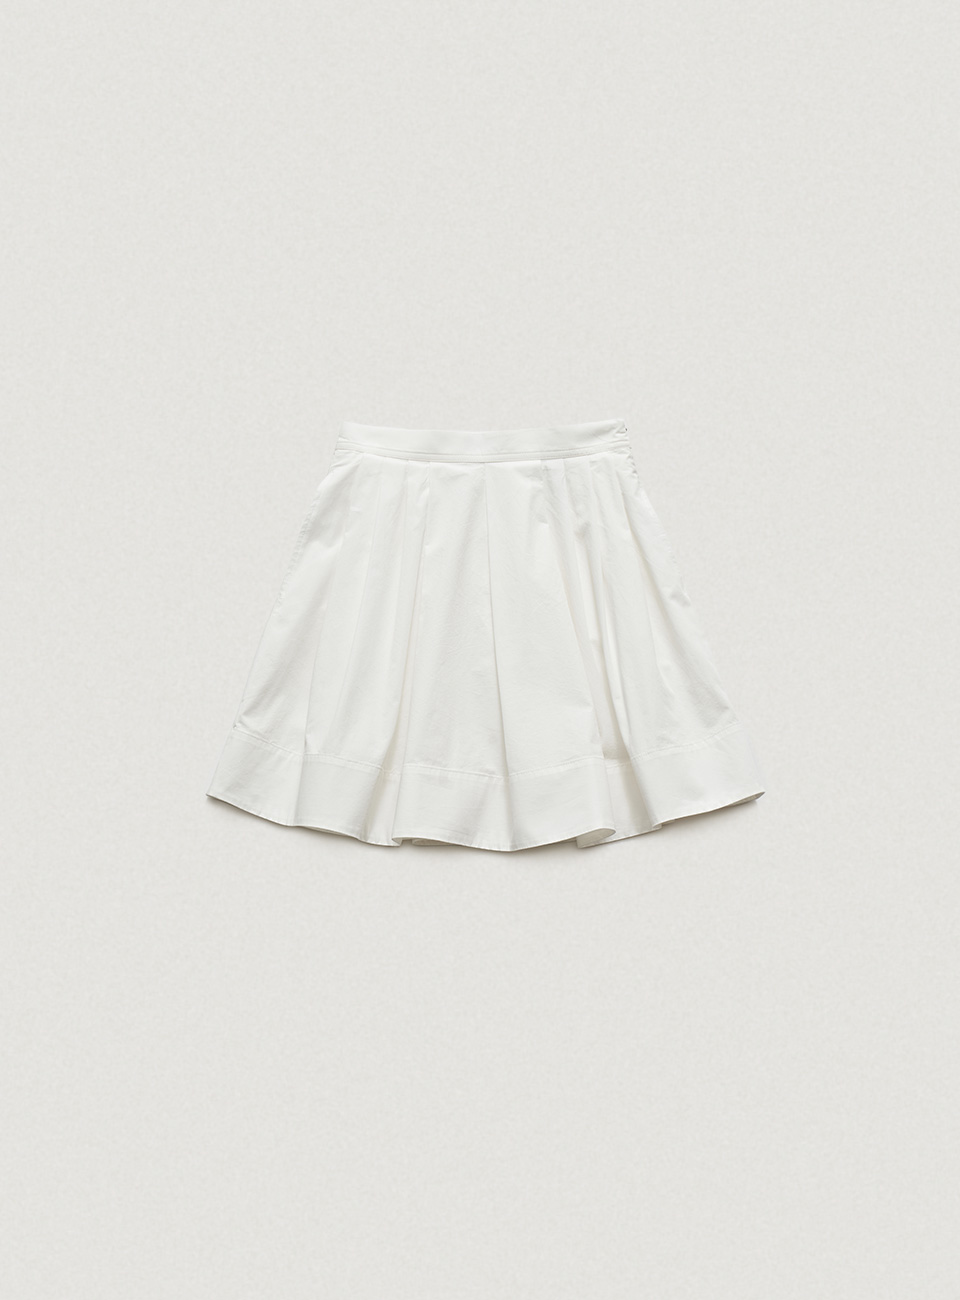 Magnolia Pleated Skirt